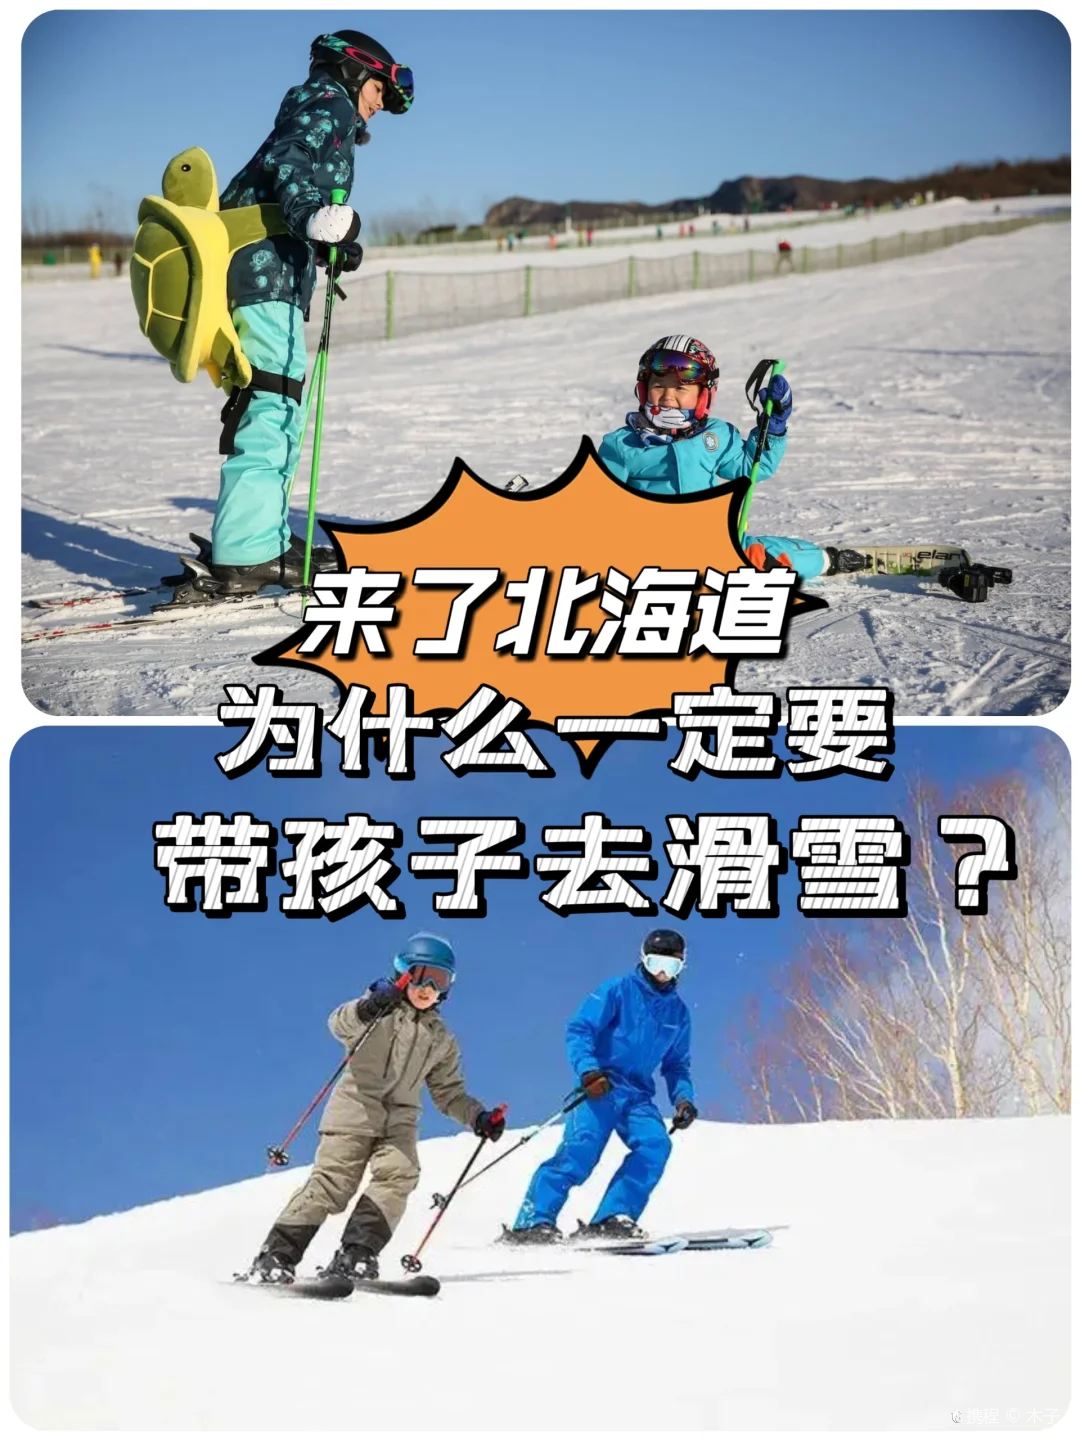 北海道亲子游必打卡项目 | 滑雪